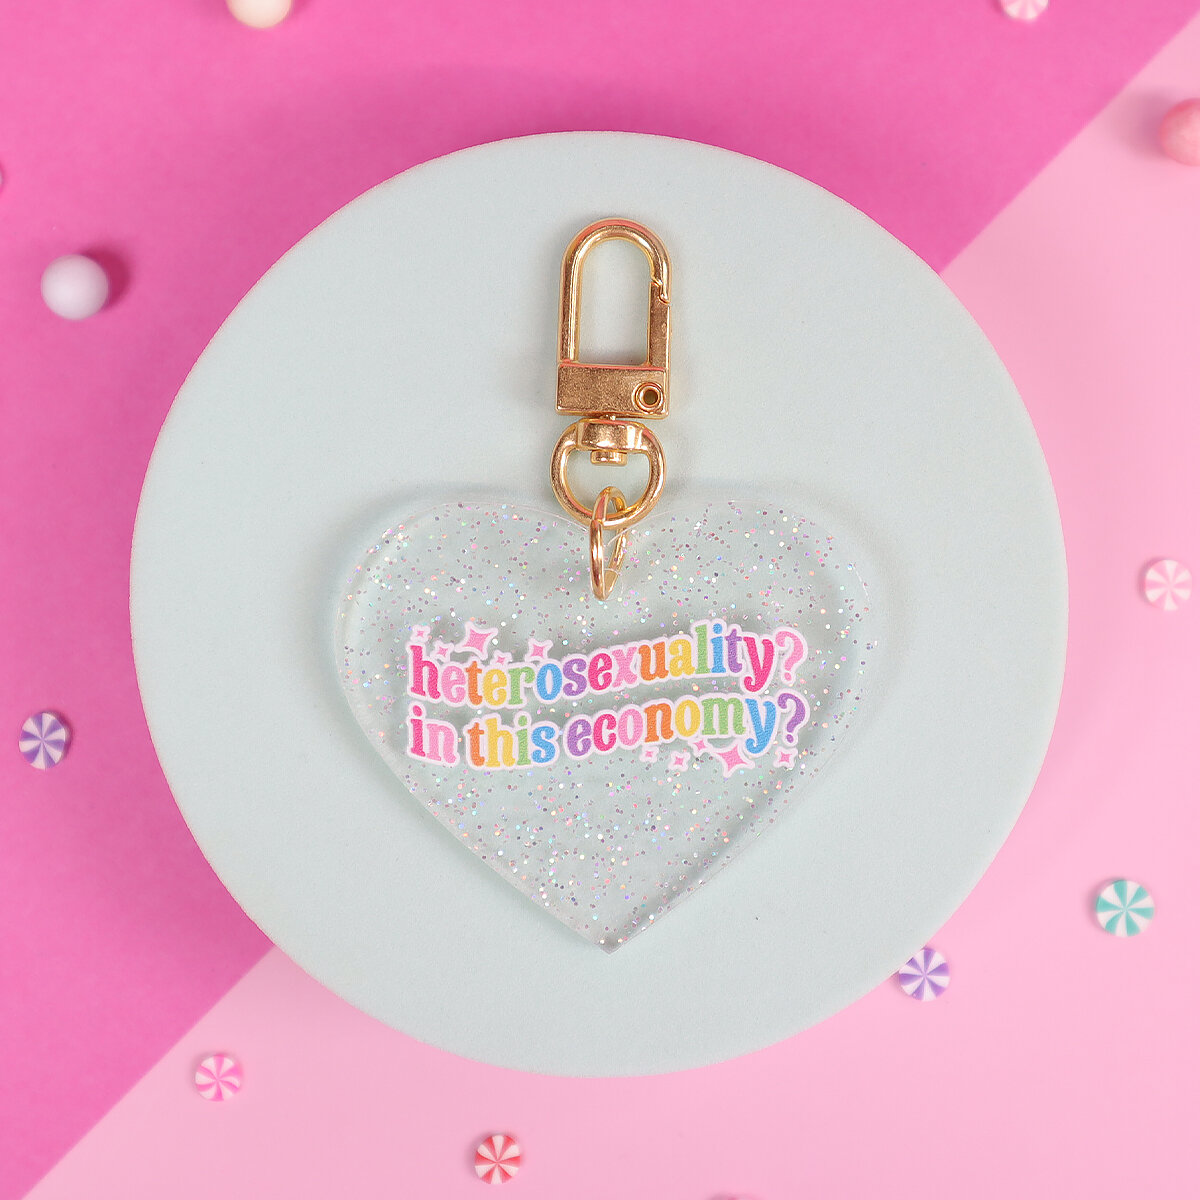 Glitter heart key ring - Heterosexuality?